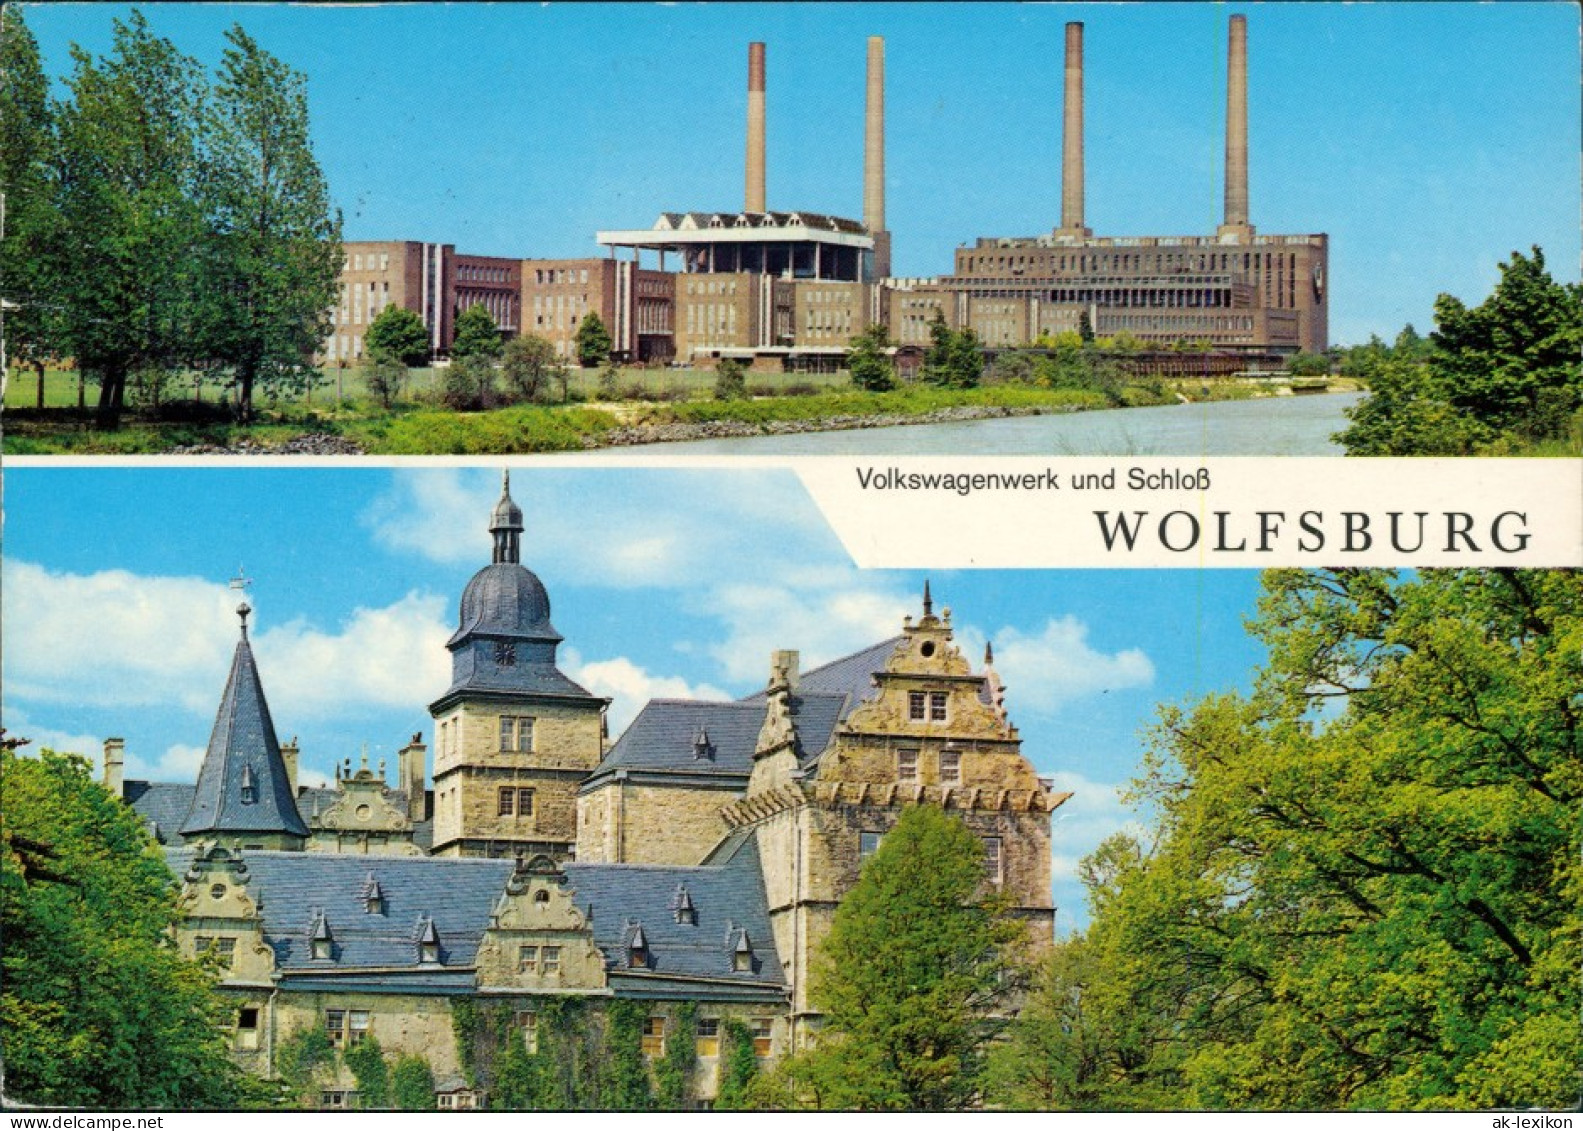 Ansichtskarte Wolfsburg VW Volkswagen-Werk Und Schloß 1973 - Wolfsburg